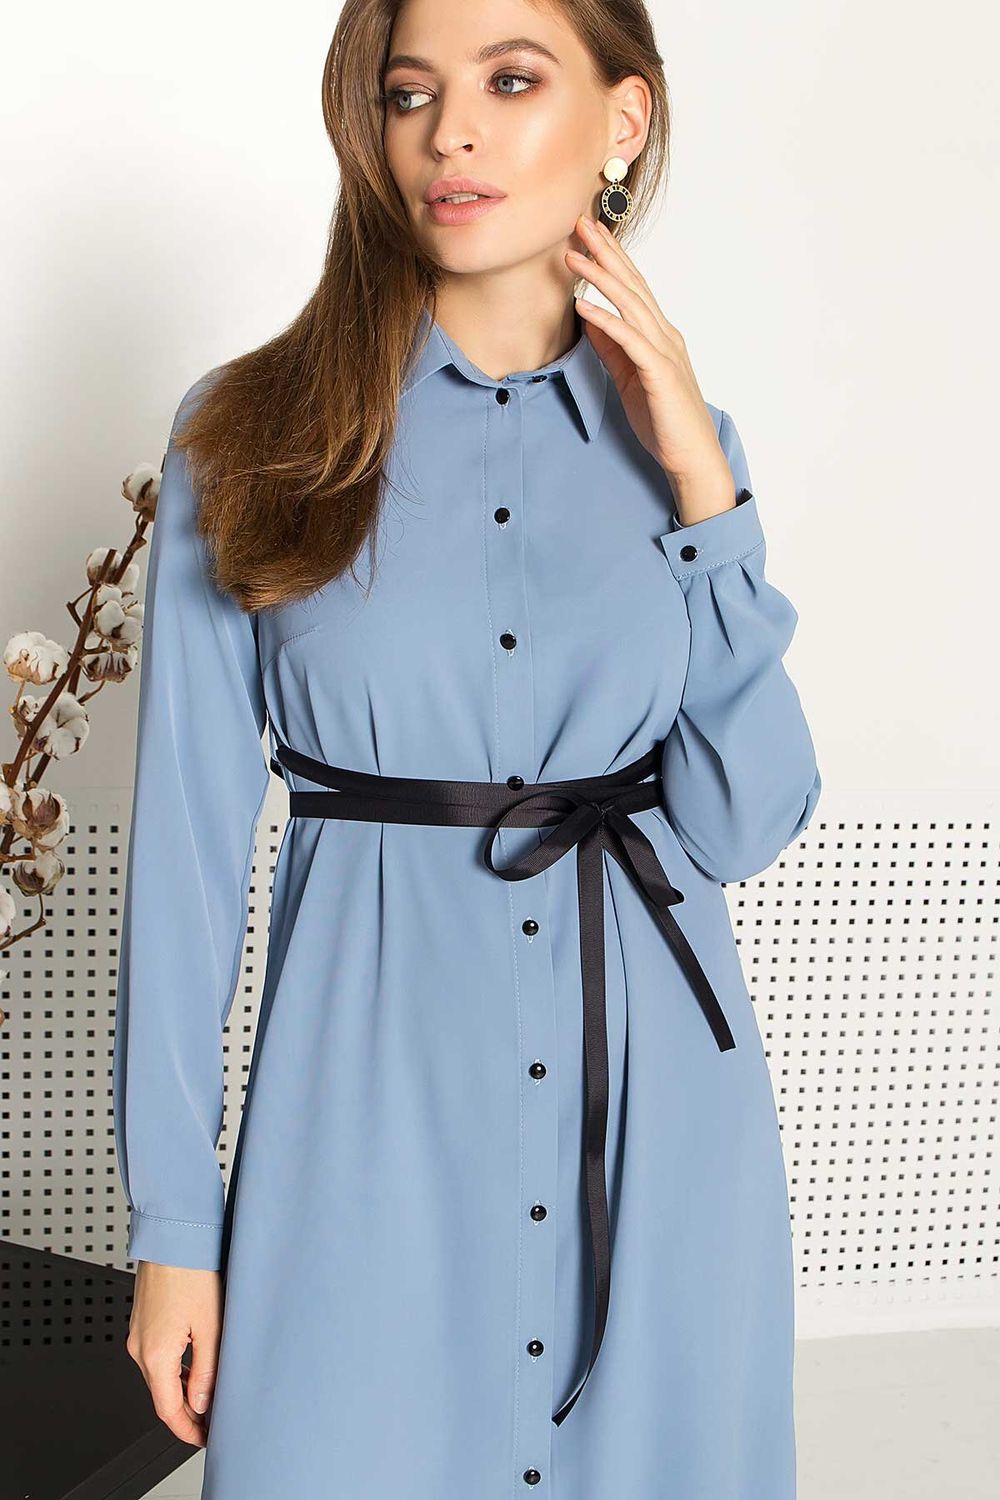 Легкое весеннее платье-рубашка с поясом голубое - фото